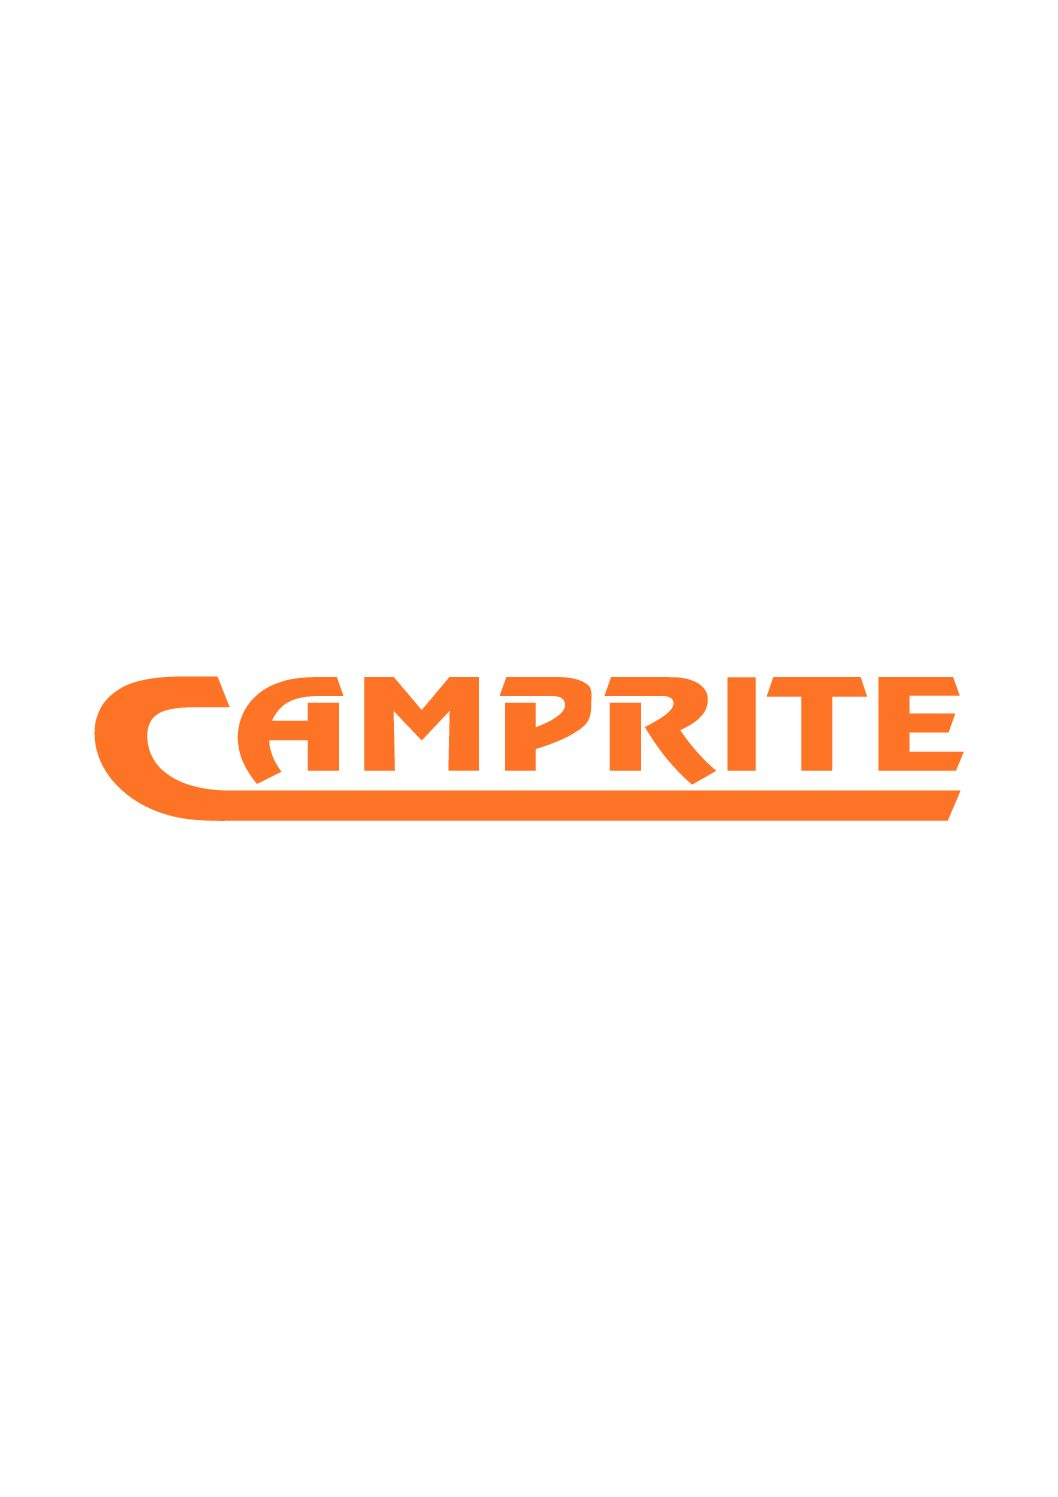 Camprite Campers / Camping Culture